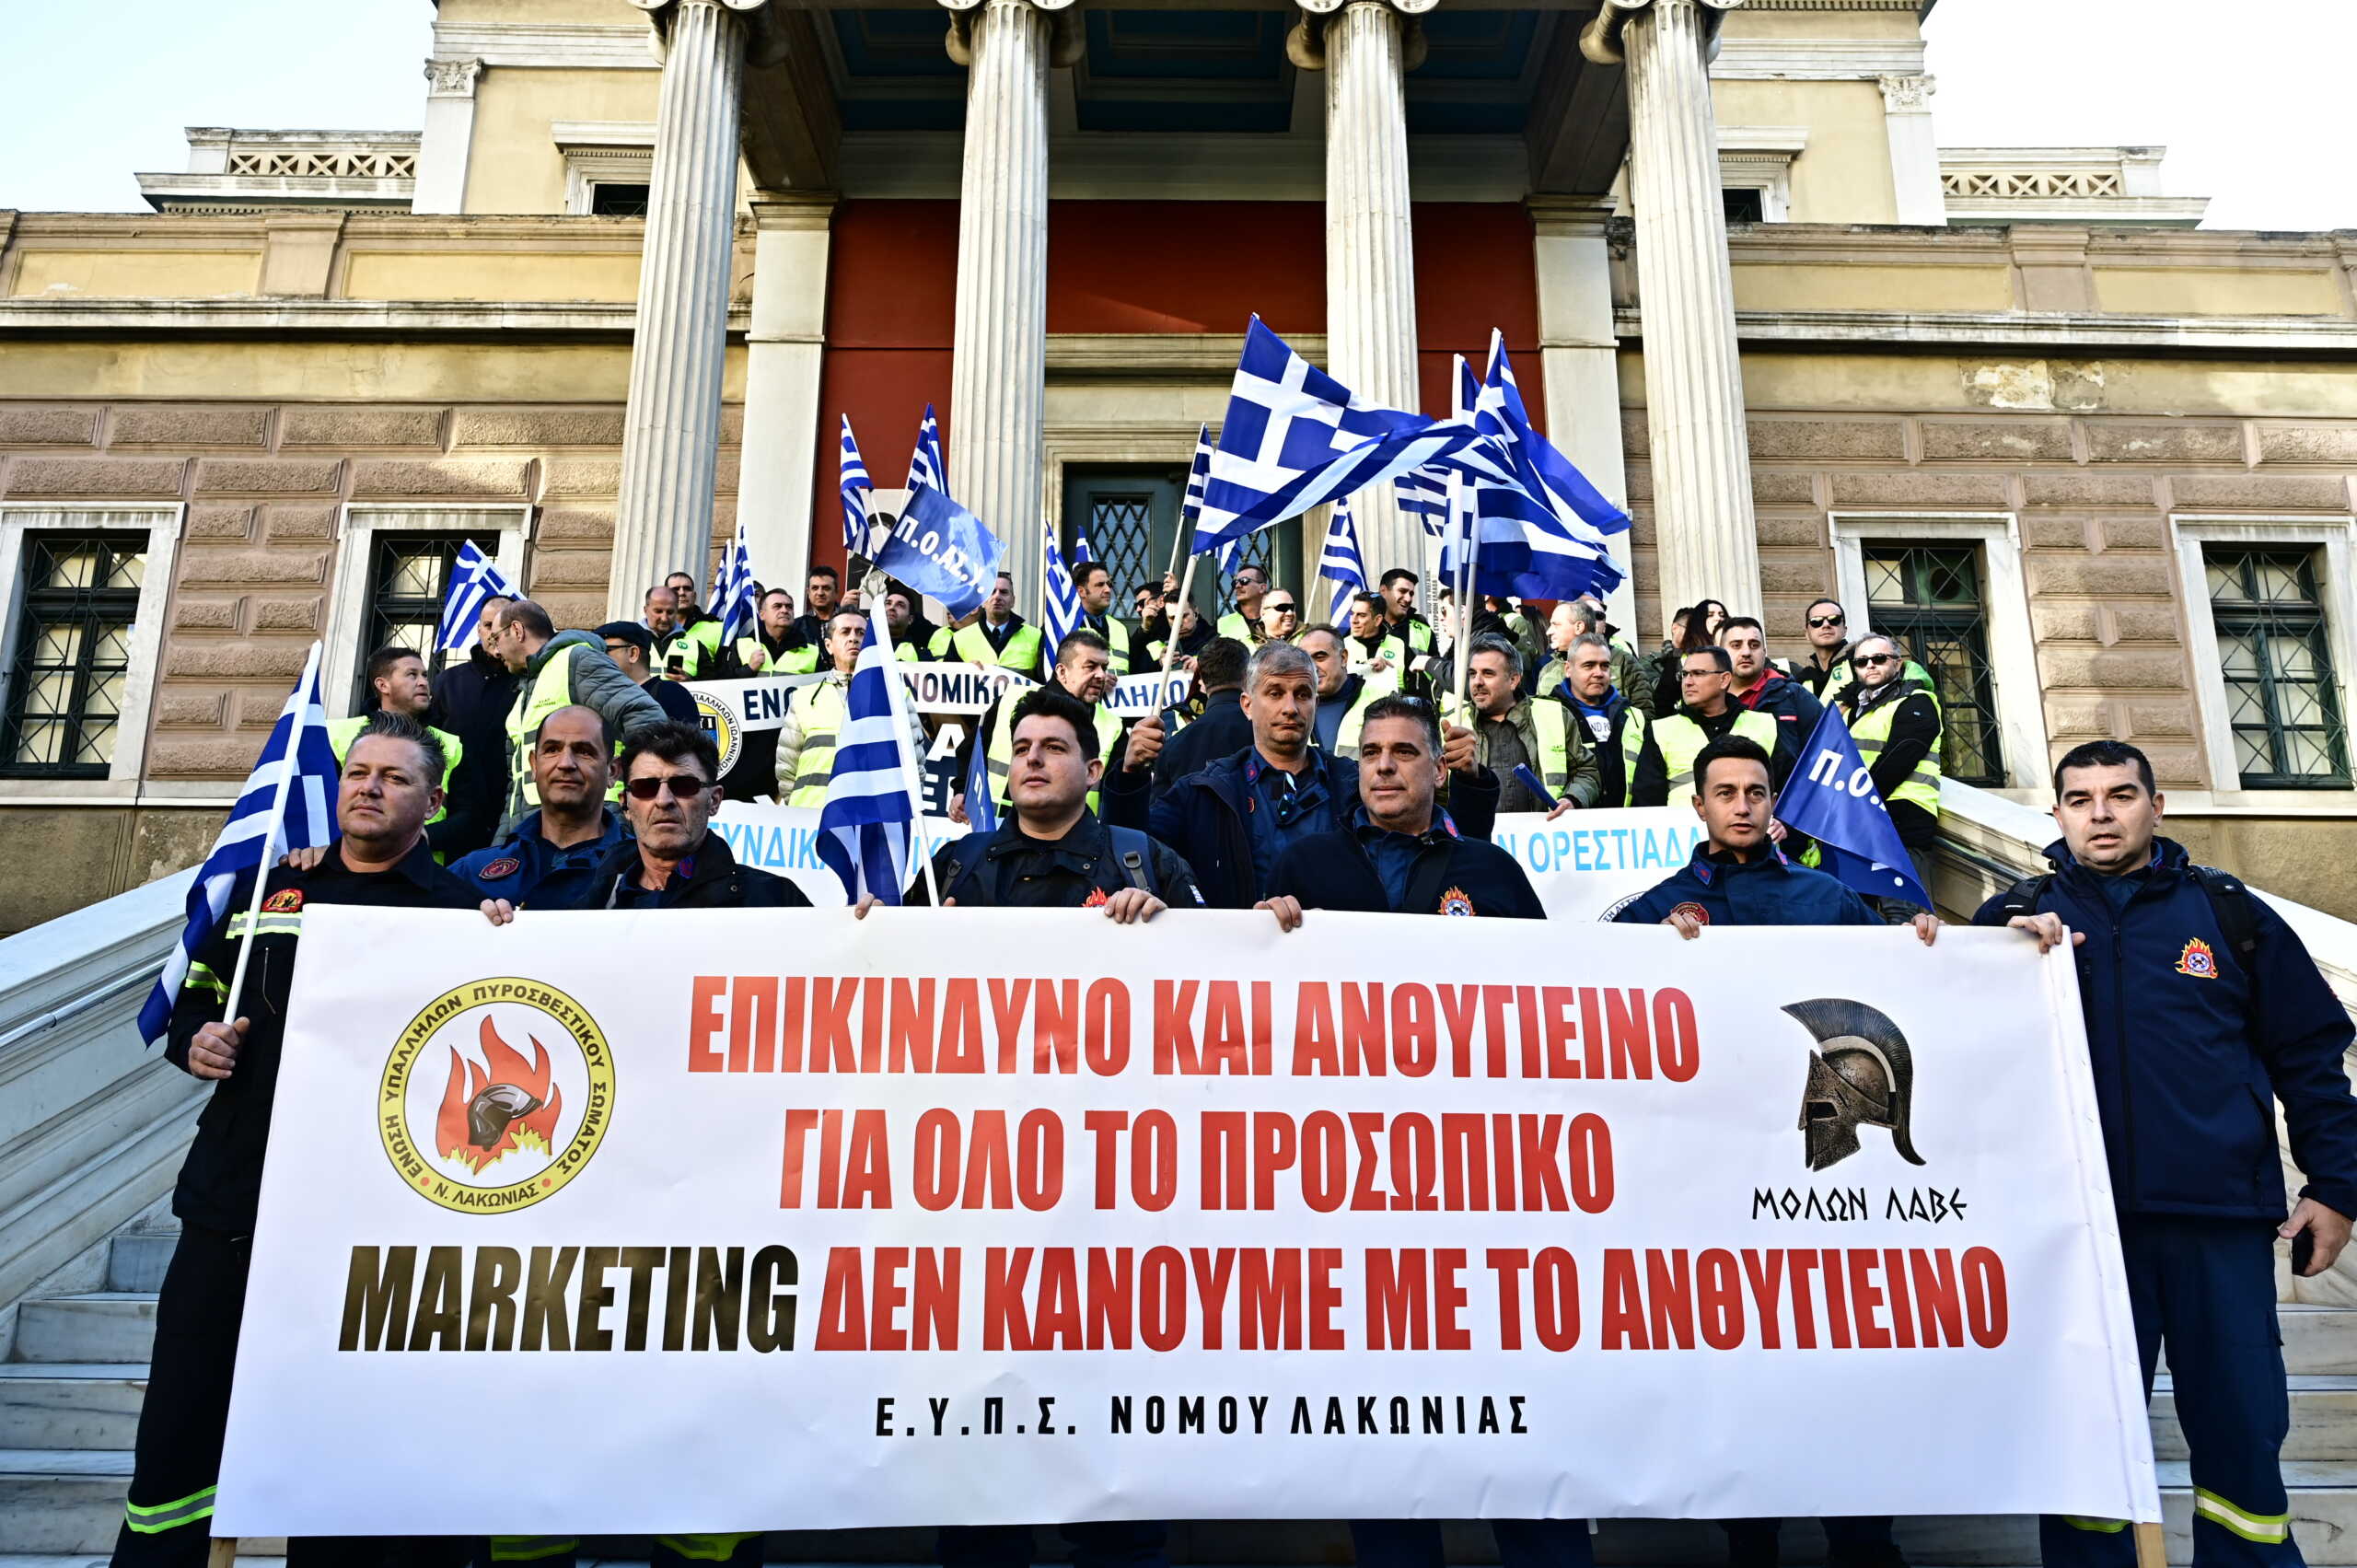 Συγκέντρωση διαμαρτυρίας ενστόλων στο κέντρο της Αθήνας